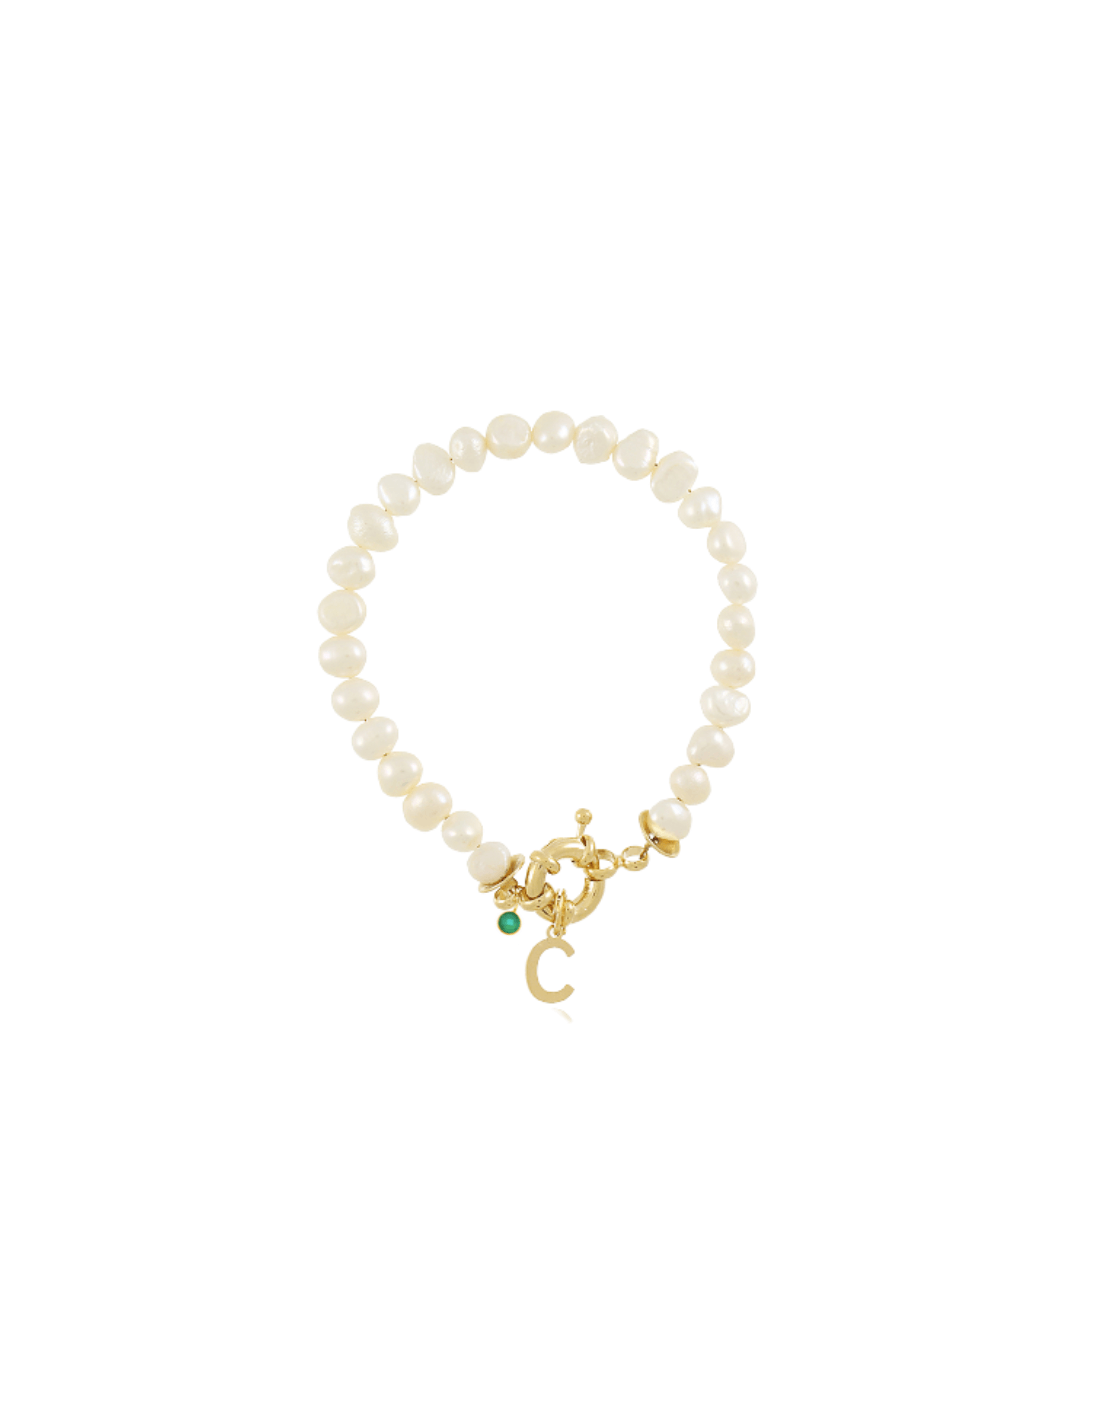 Pearls Sailor Initials Bracelet | Personalised Bracelets | Malu Maiese